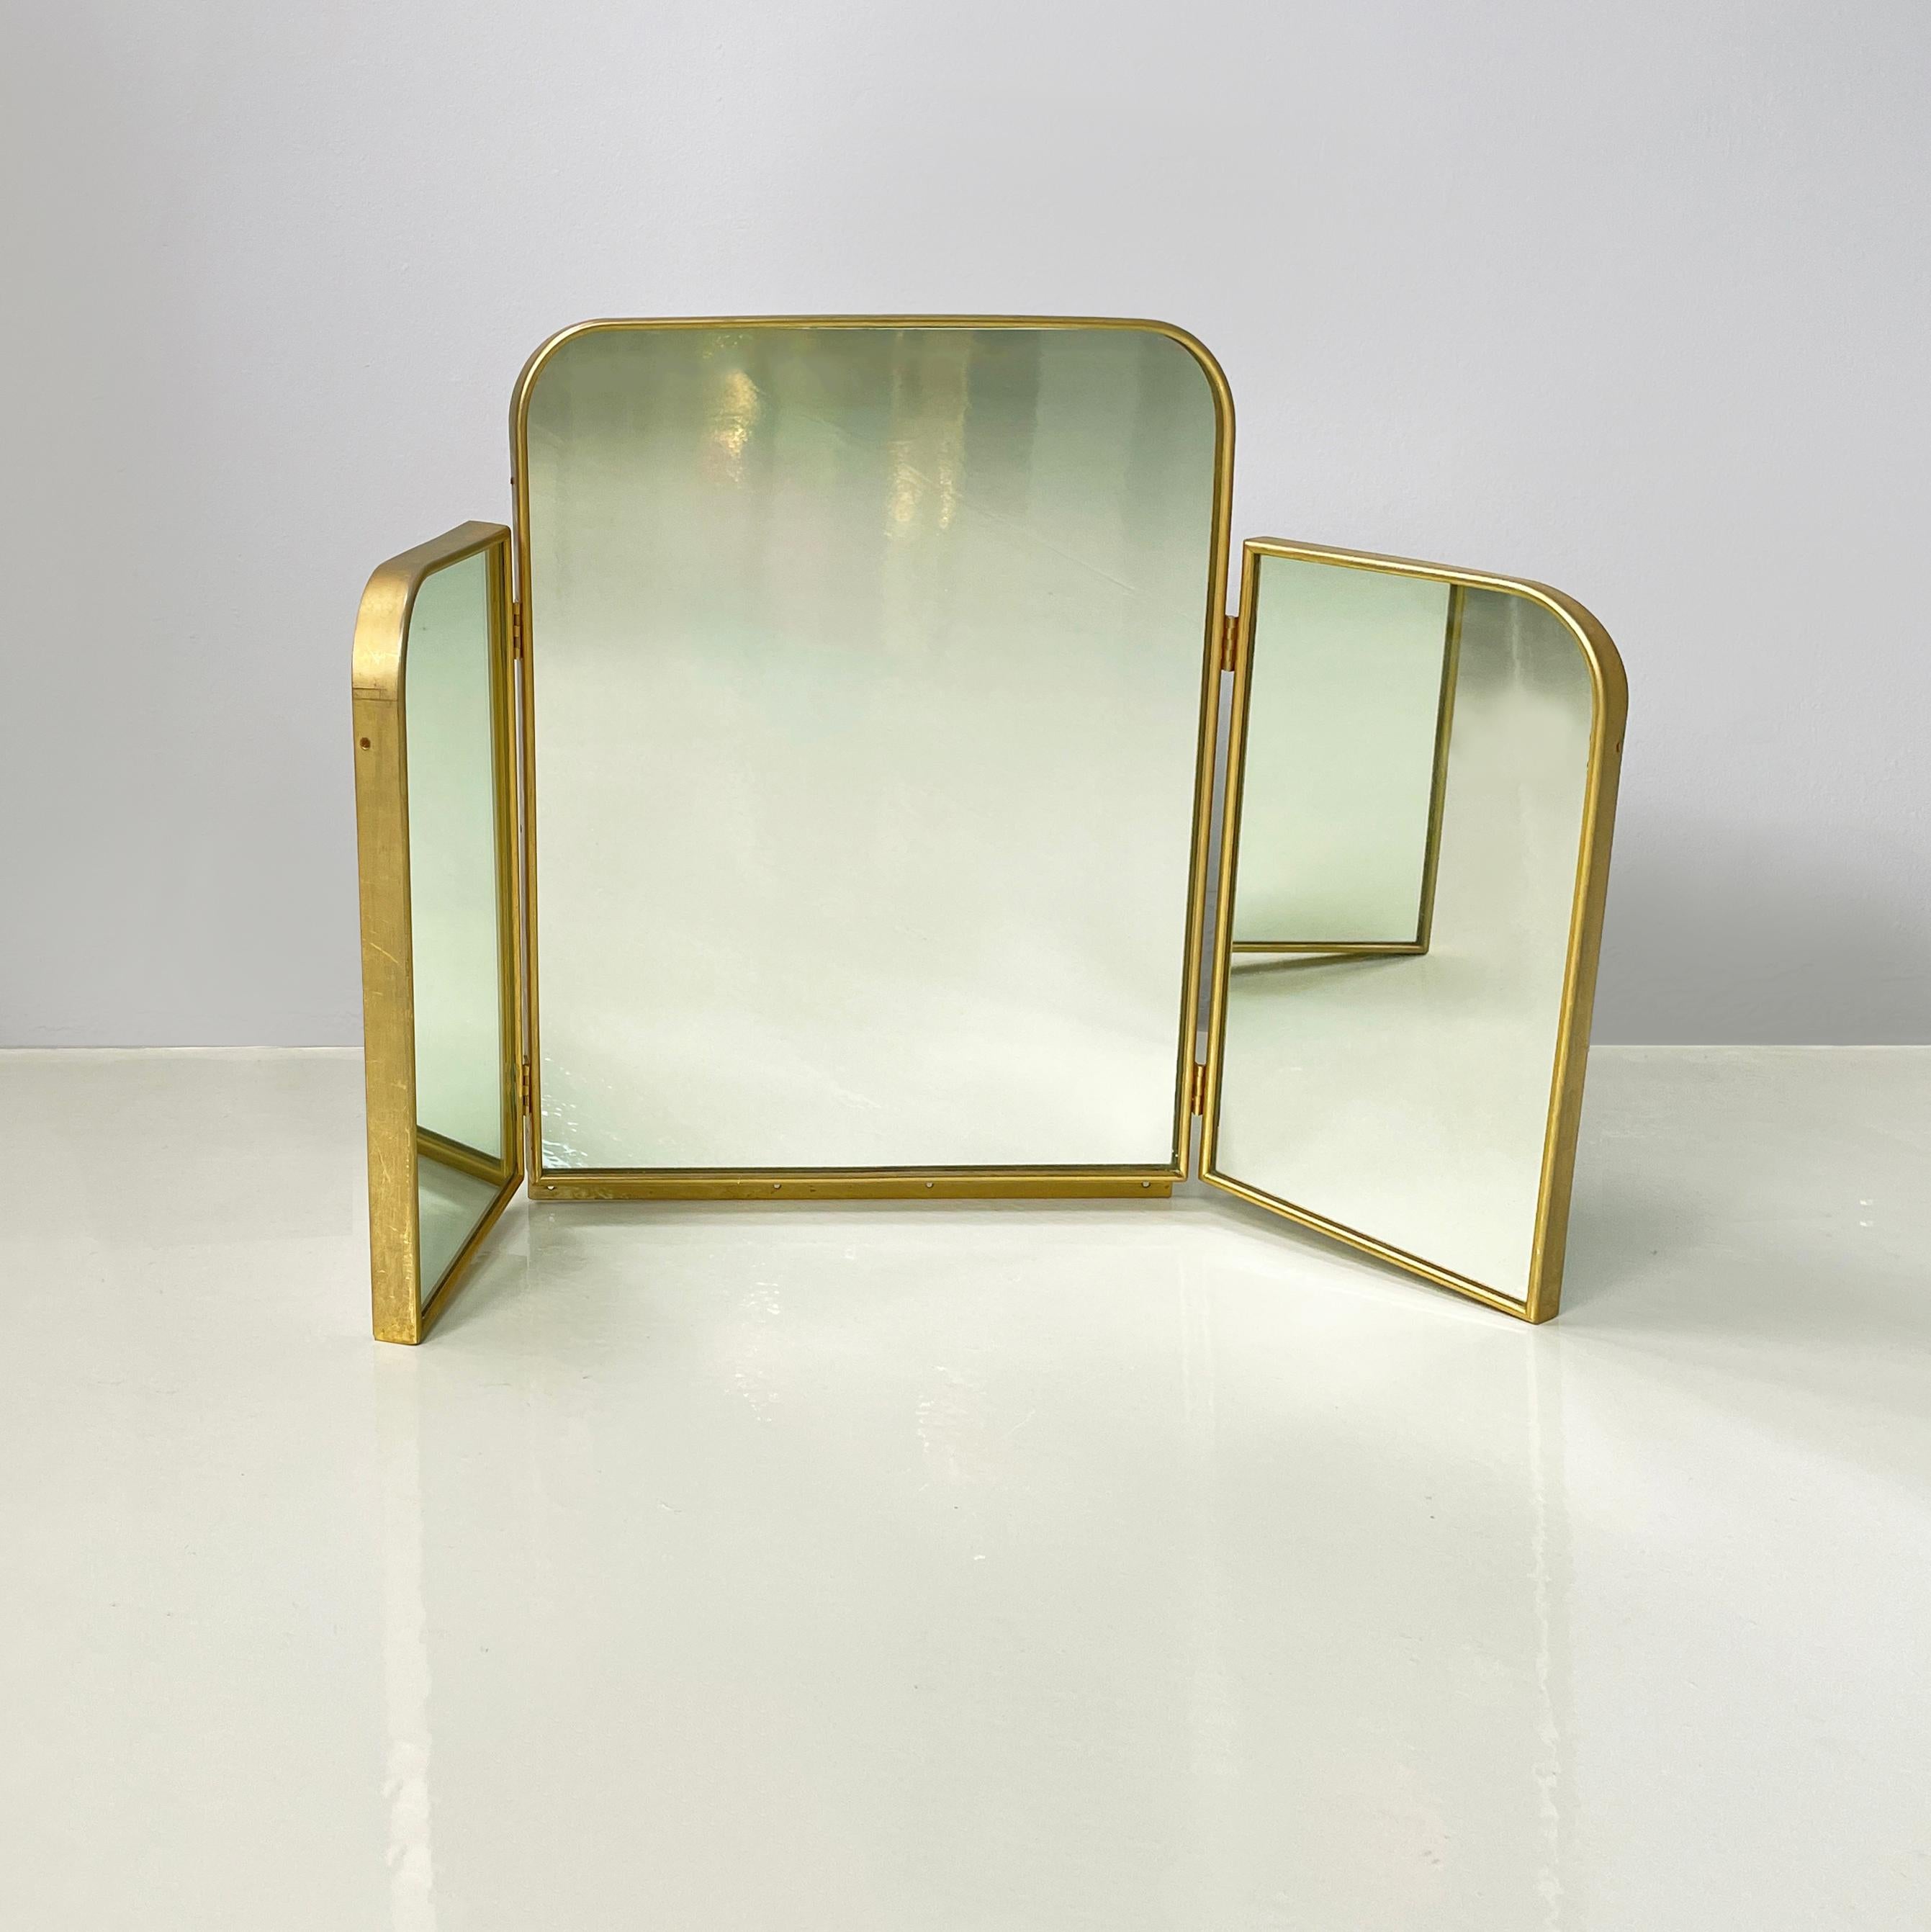 Miroir de table à trois portes en laiton et bois blanc, Italie, milieu du siècle dernier, années 1950.
Miroir de table à trois portes avec structure en bois peint en blanc et profils en laiton. Les 3 miroirs ont un bord supérieur arrondi. Il peut